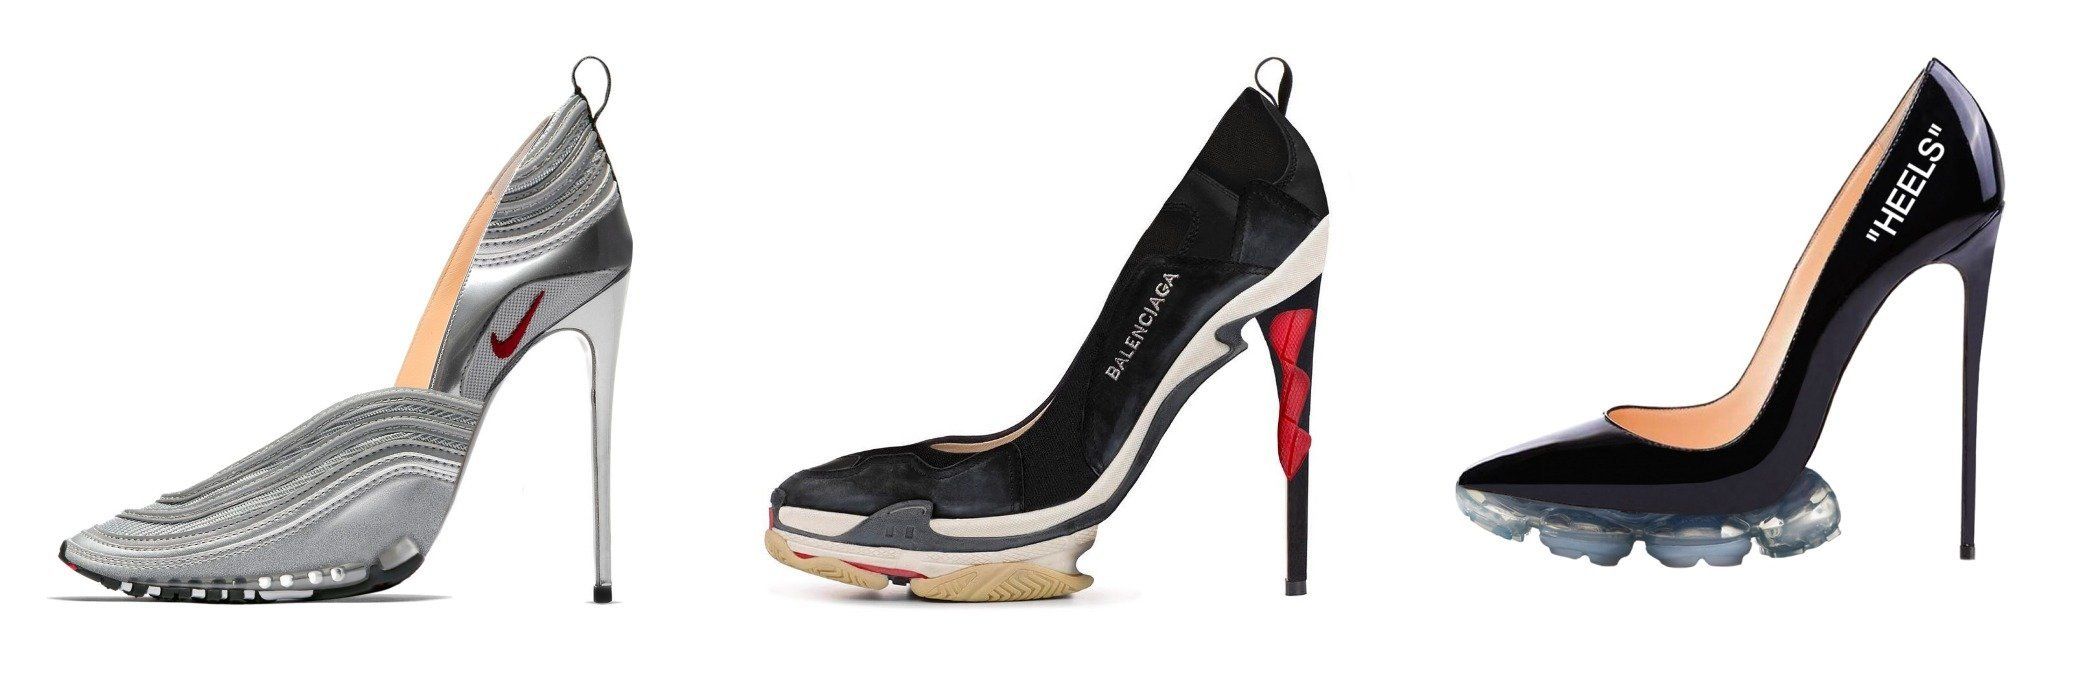 Womens Walking High wedge Heel Sneakers Tennis Lightweight Athletic Shoes |  eBay